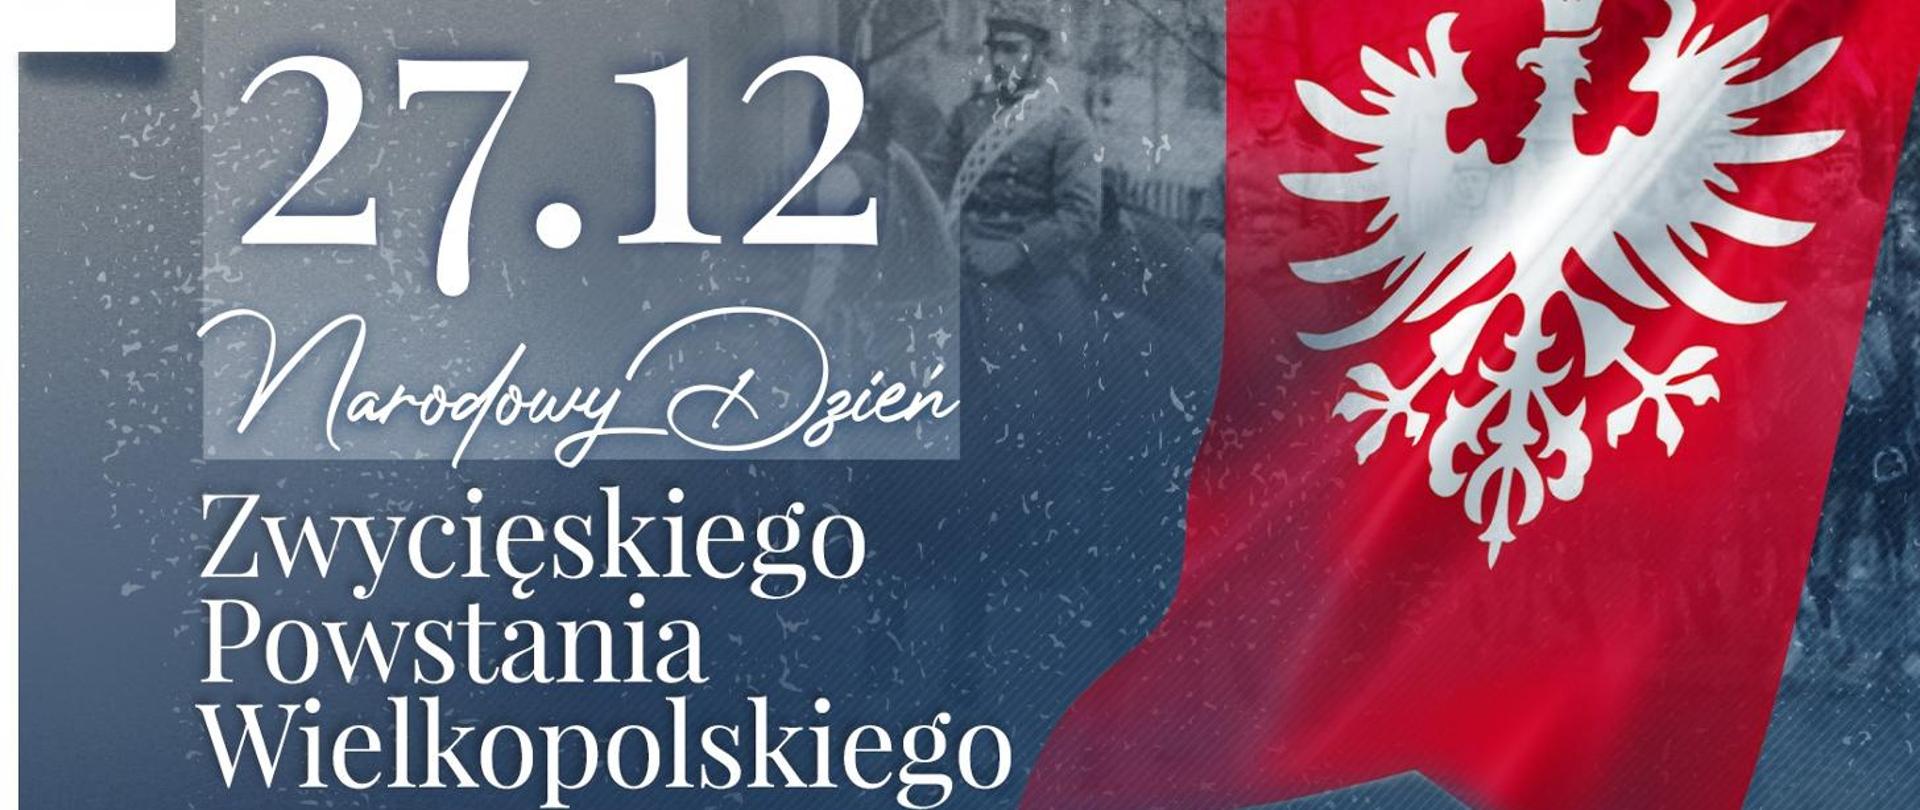 Grafika przedstawia orła wielkopolskiego na fladze powstańczej i napis - Narodowe Dzień Zwycięskiego Powstania Wielkopolskiego